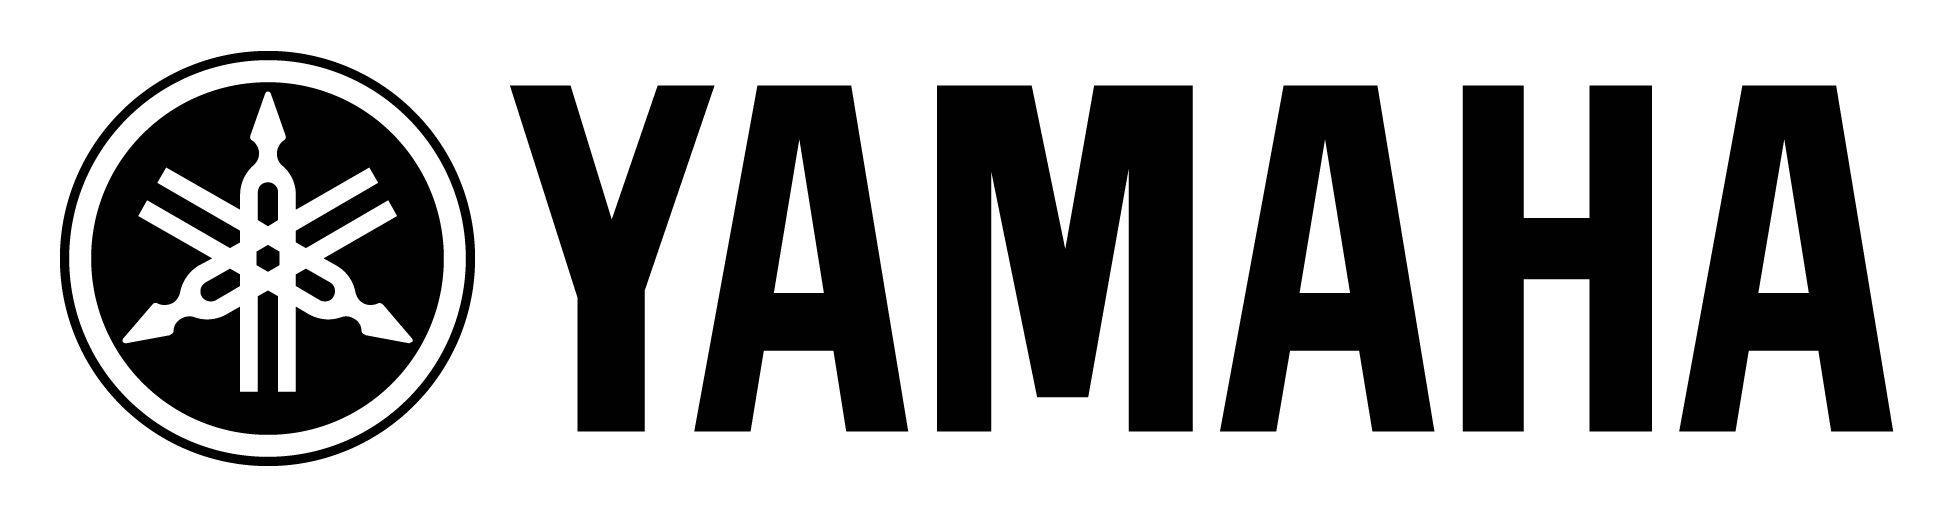 Yamalube Logo - Yamaha PNG Transparent Yamaha.PNG Images. | PlusPNG